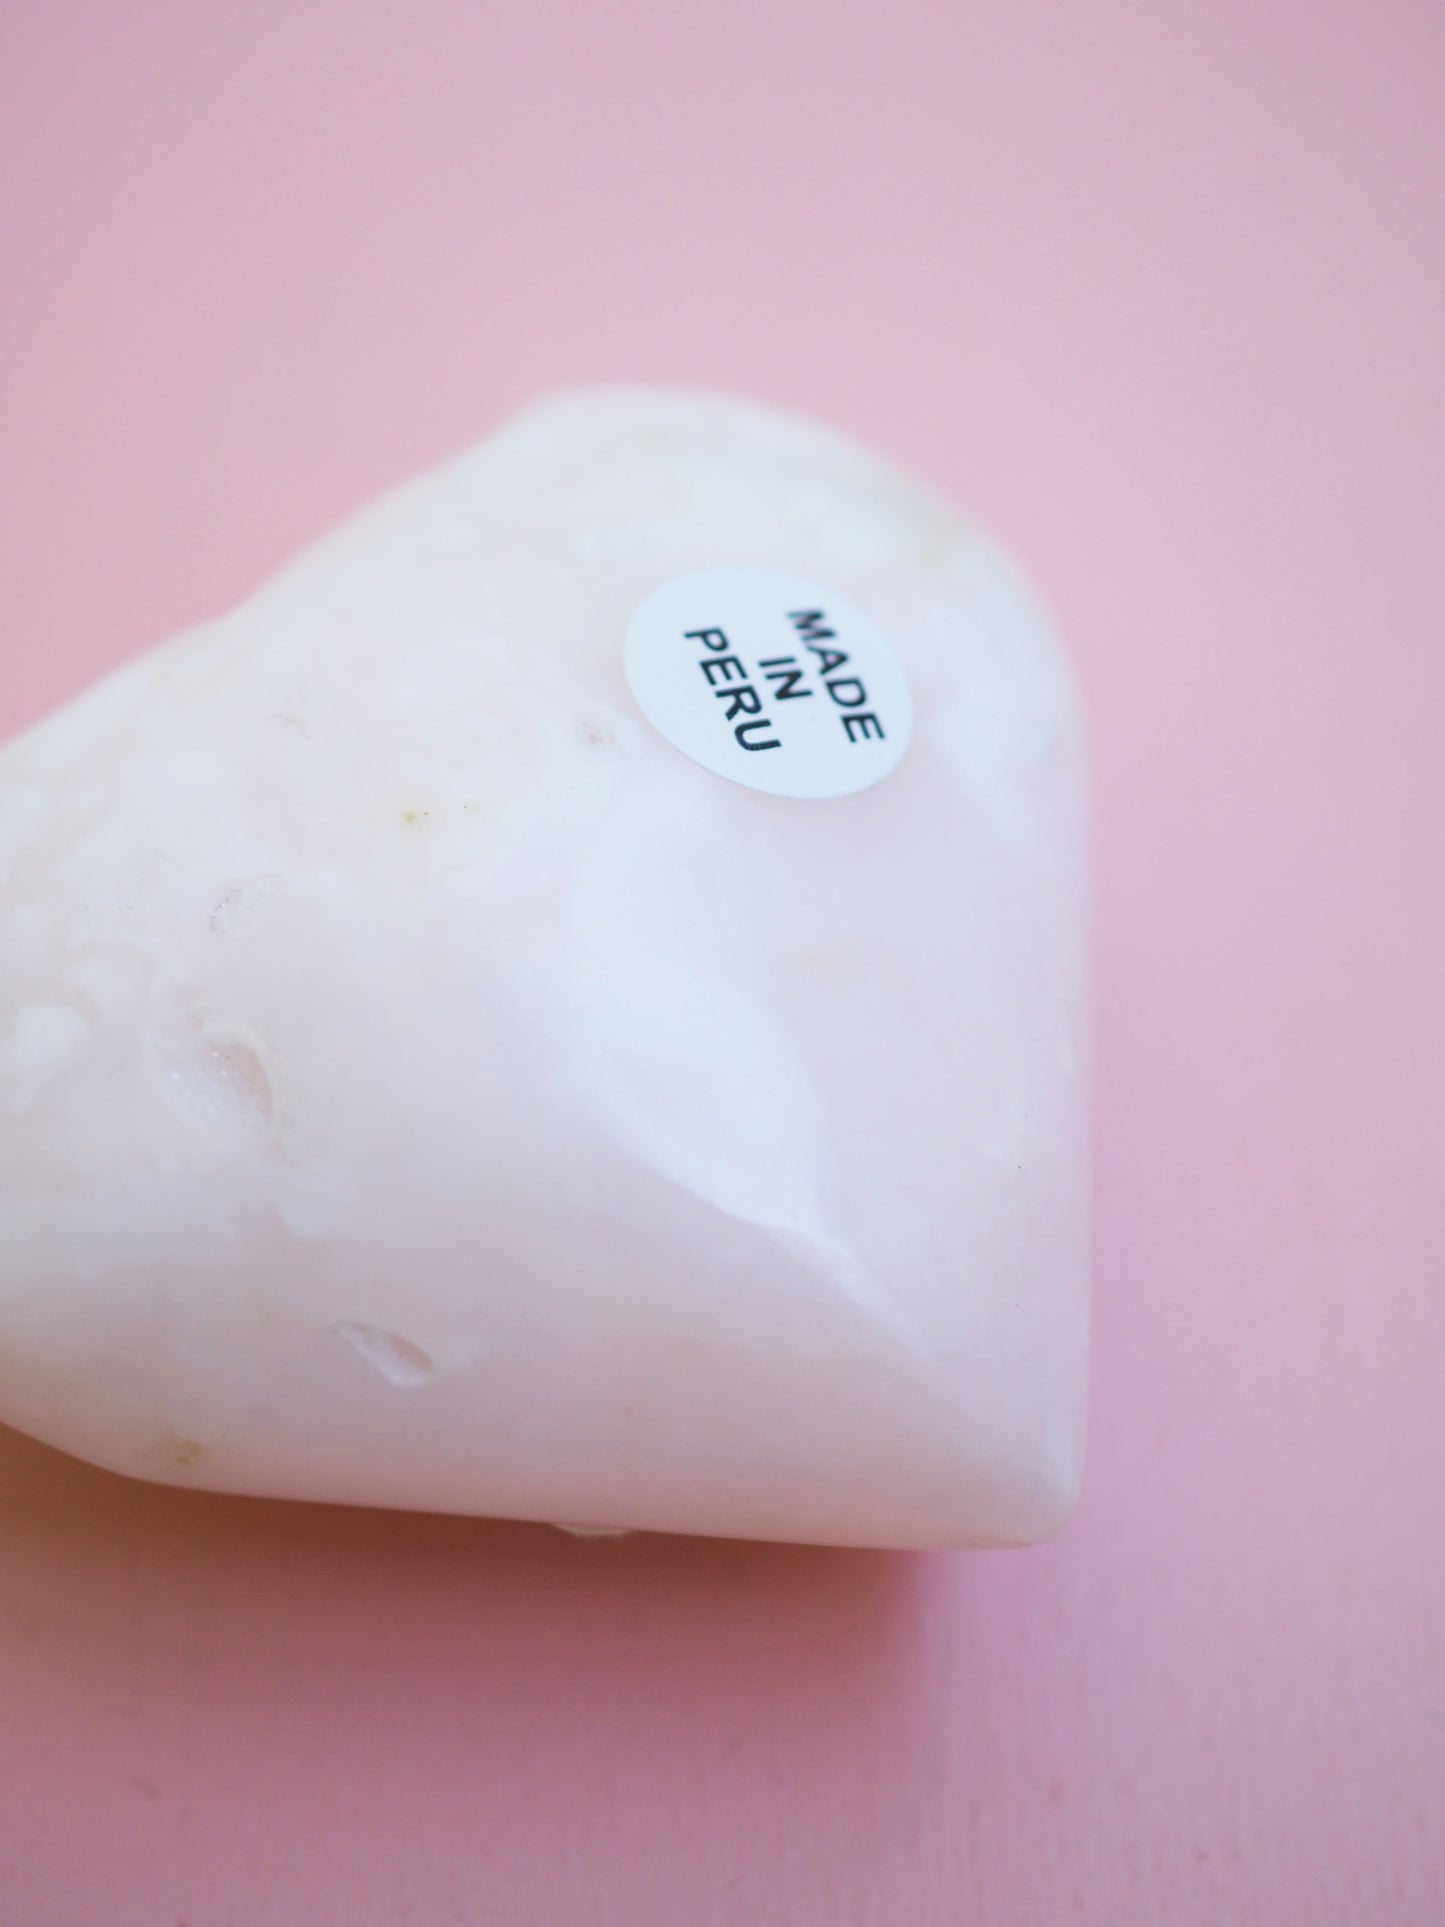 Pinker Anden Opal Herz  aus Peru - High Quality